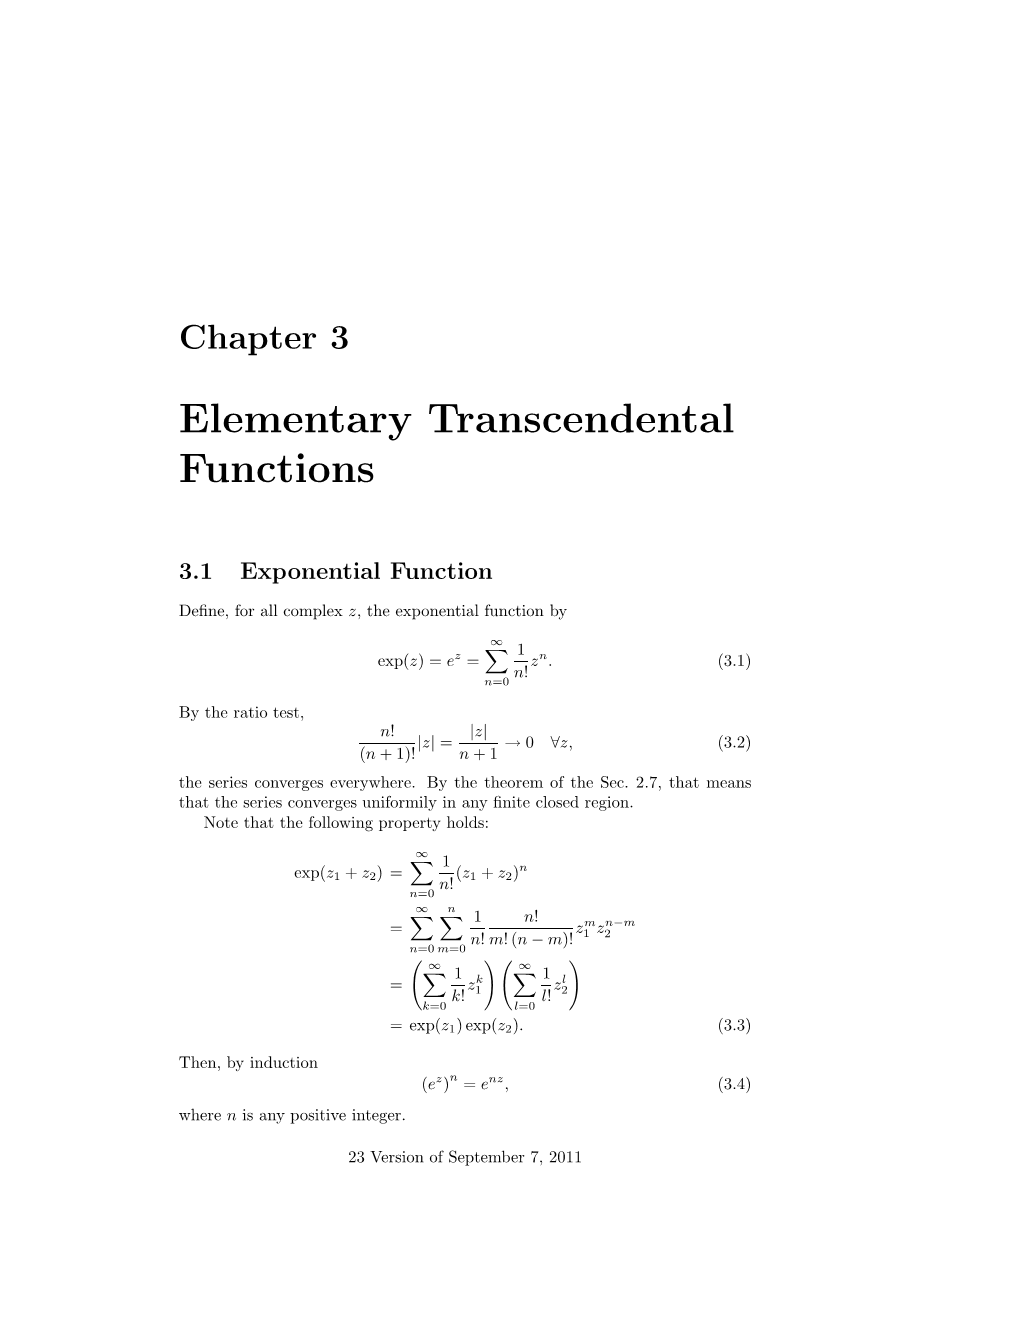 Elementary Transcendental Functions